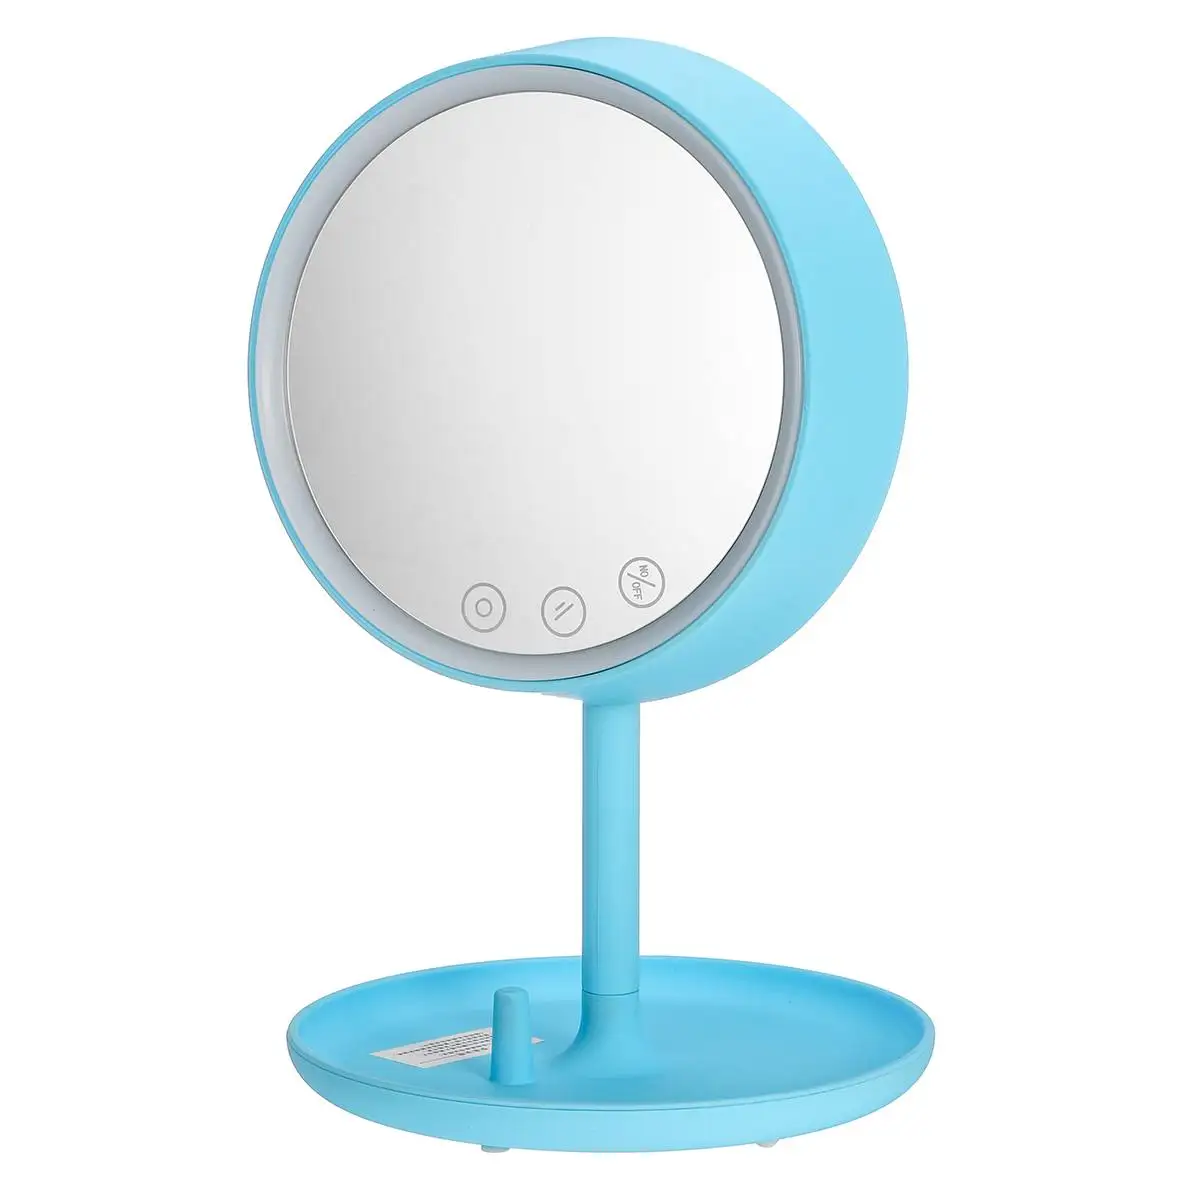 4 в 1, умный светодиодный сенсорный экран, зеркало для макияжа, зеркала, bluetooth динамик, 7 цветов, настольная лампа, встроенная батарея 1200 мАч - Цвет: Синий